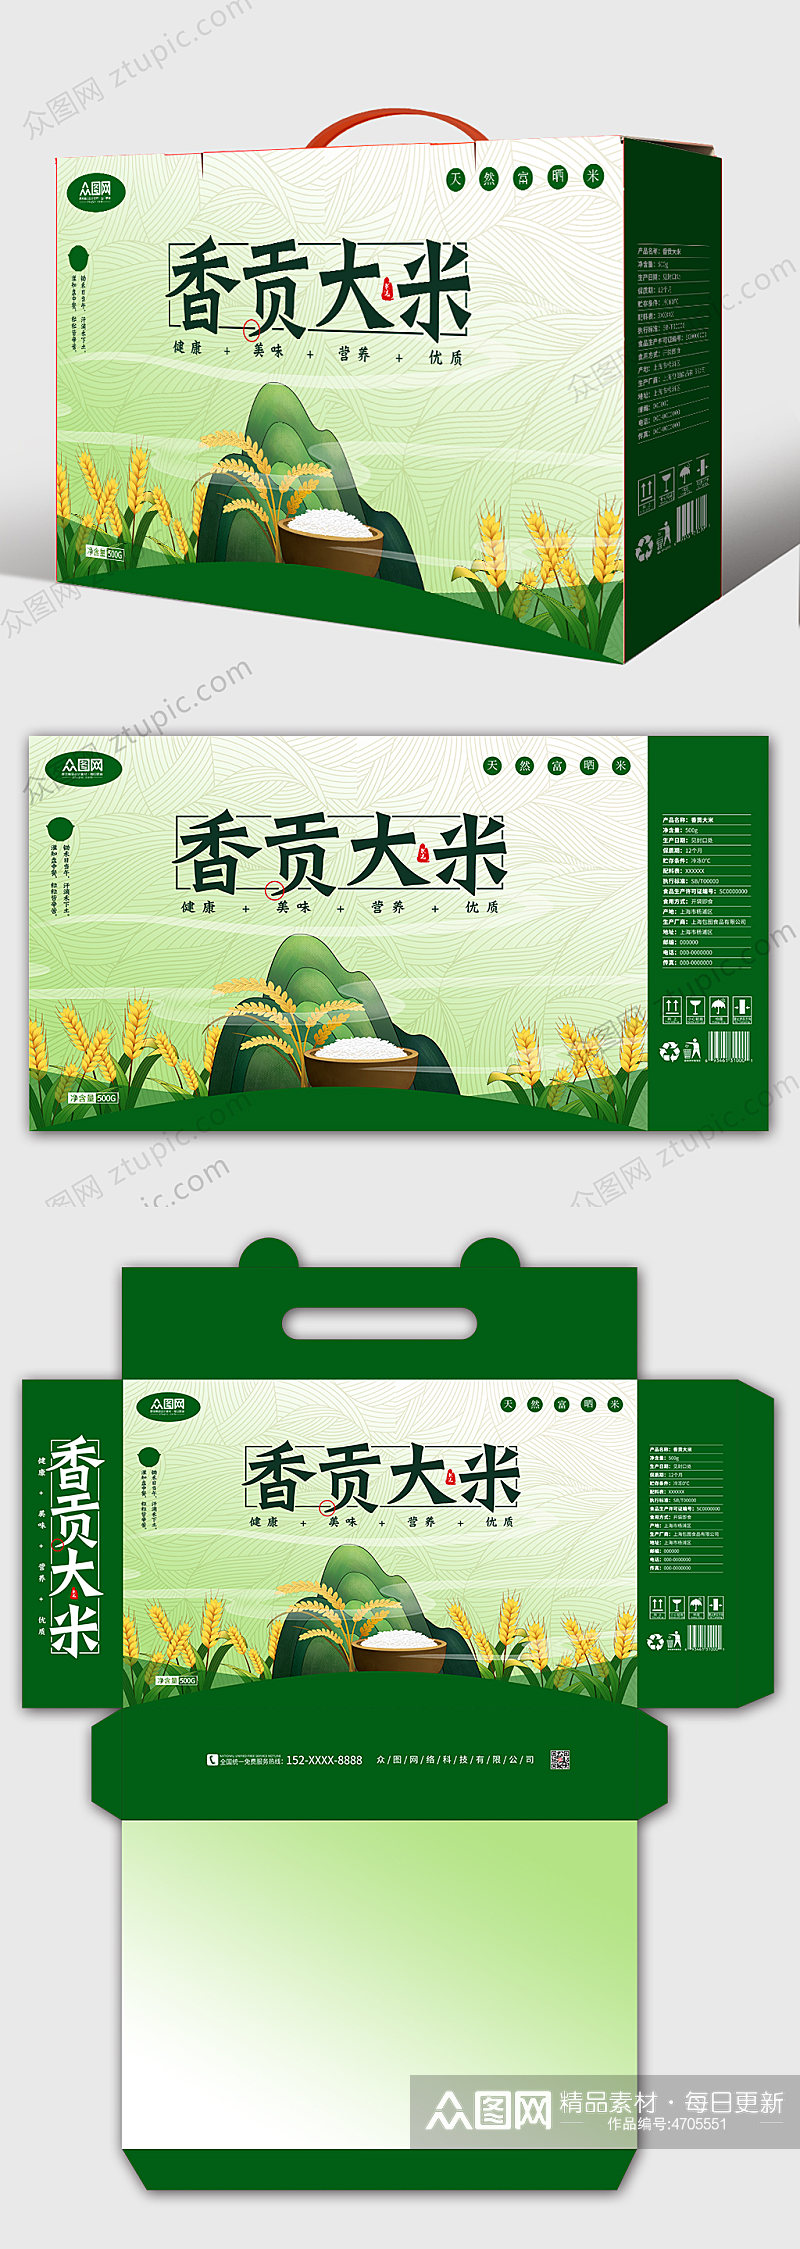 手绘稻田大米礼盒年货包装设计大米盒子素材